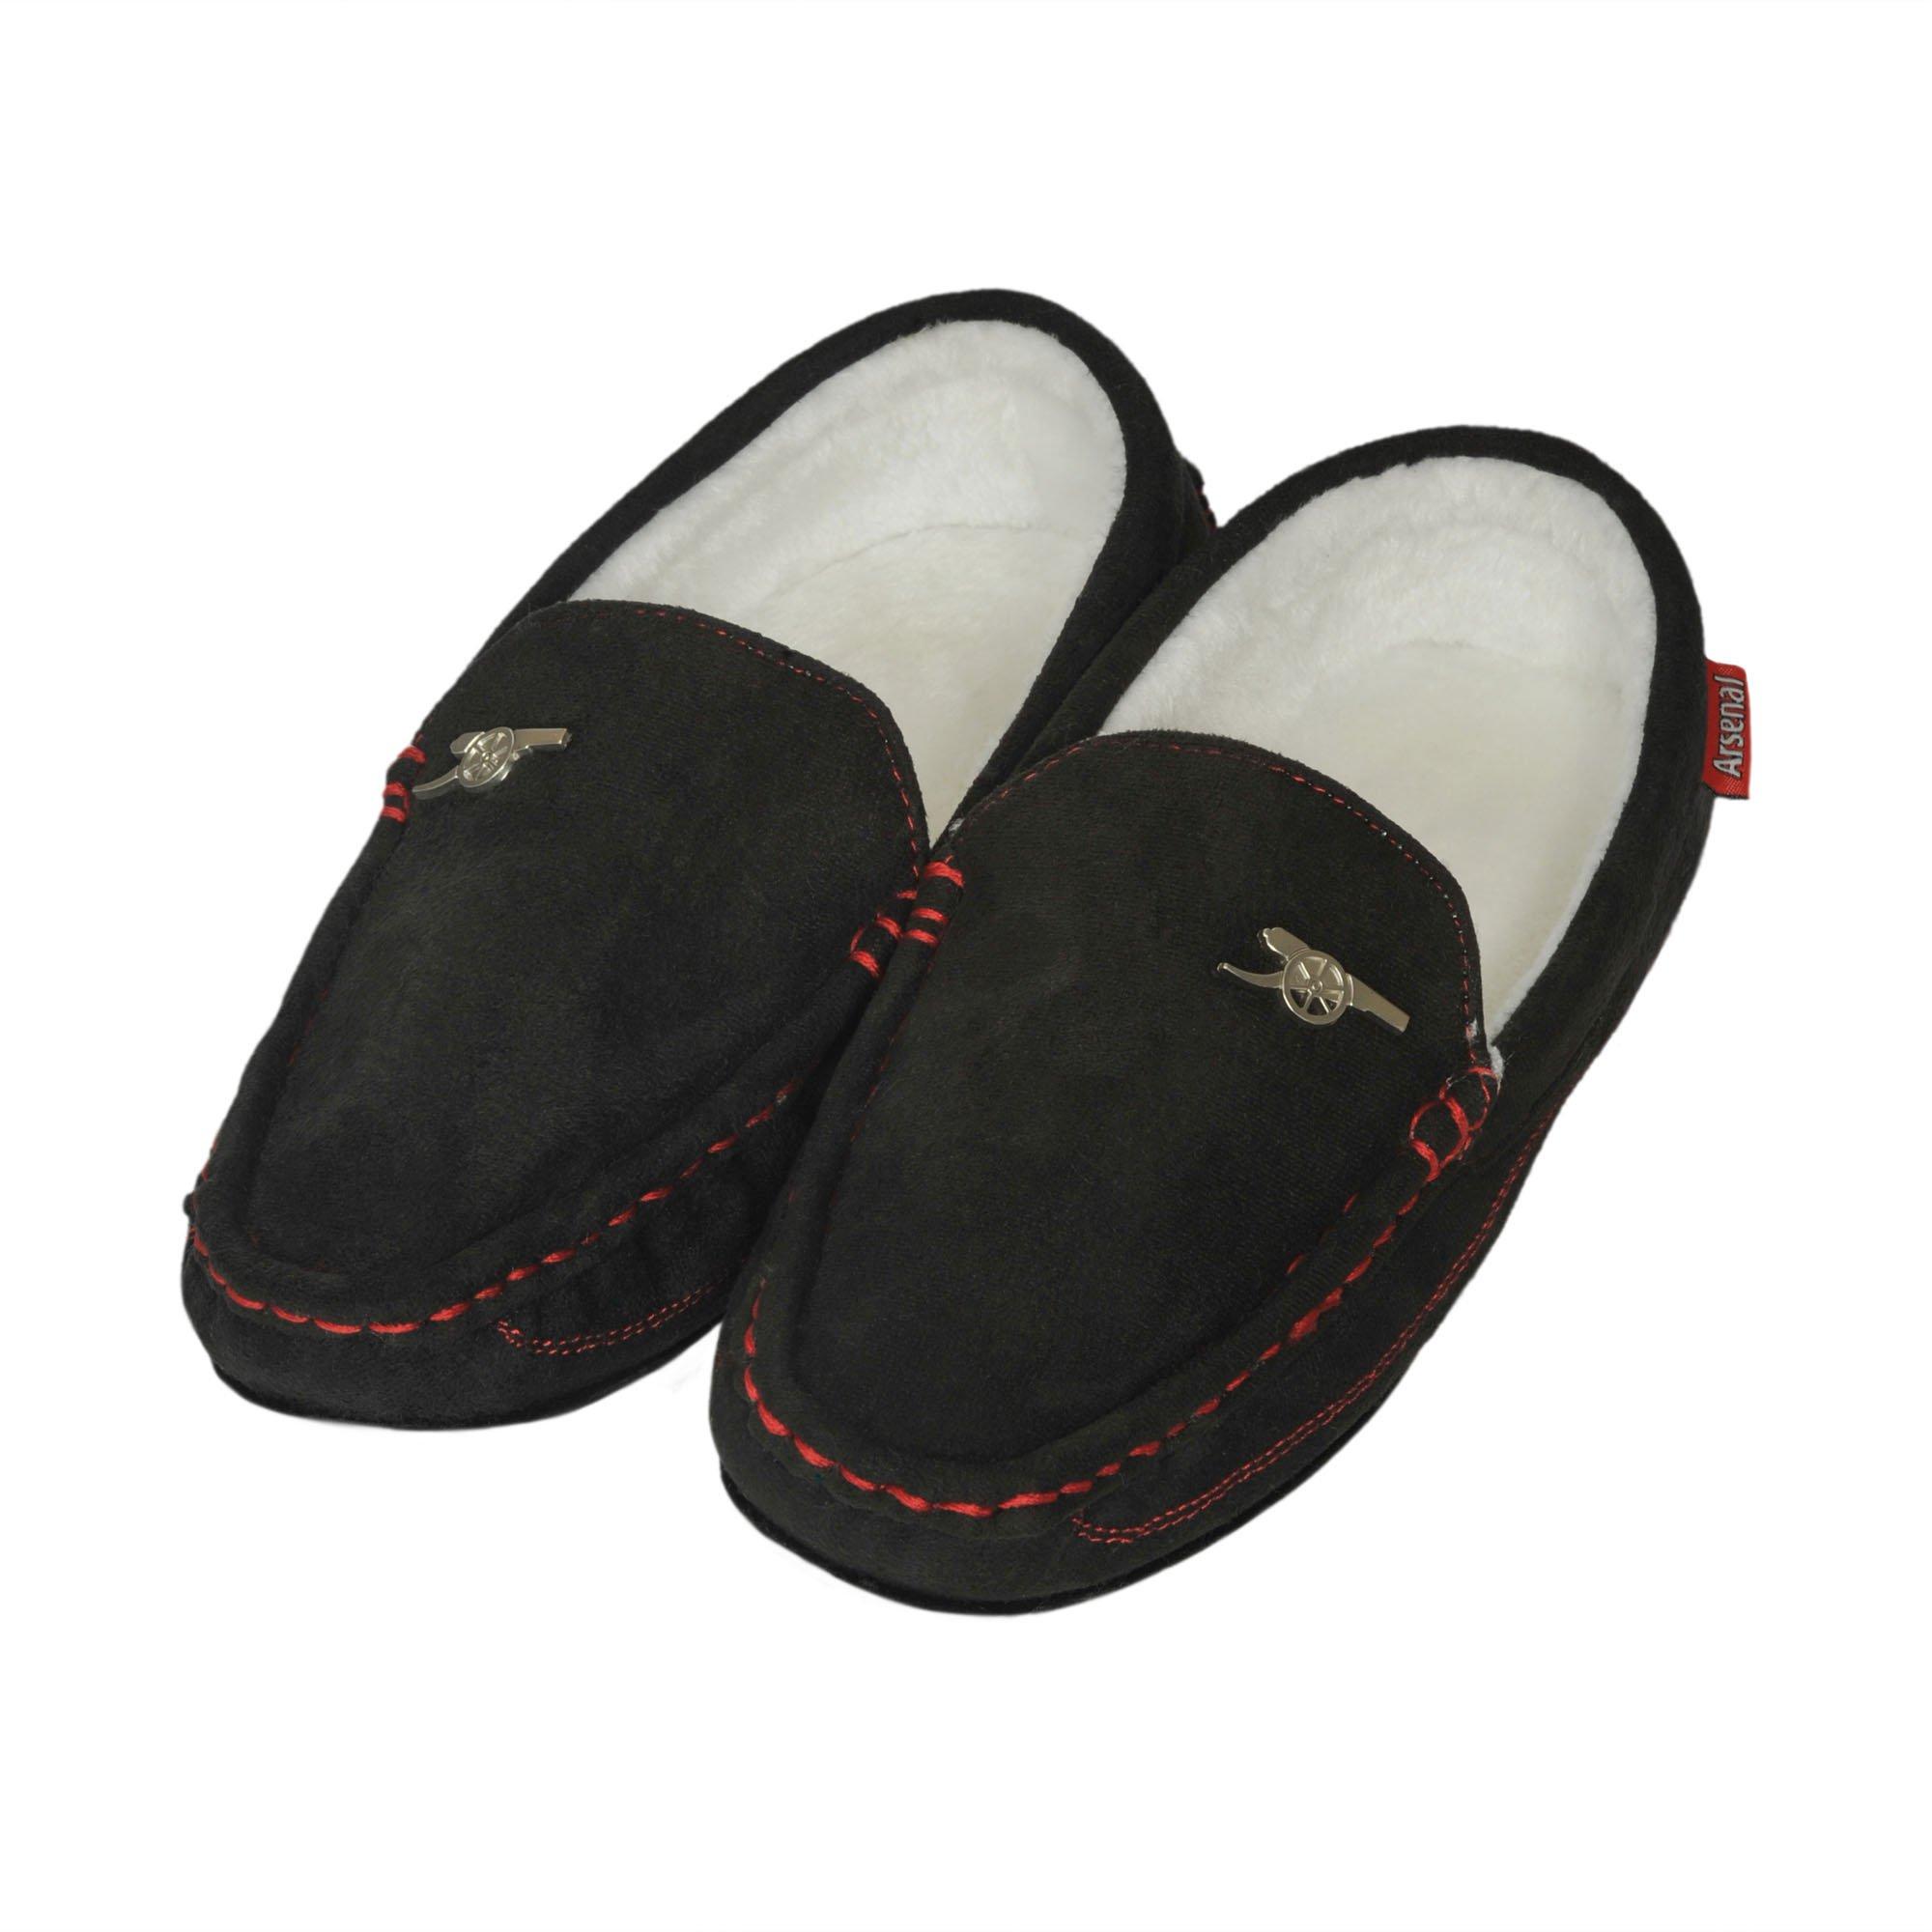 velcro house slippers